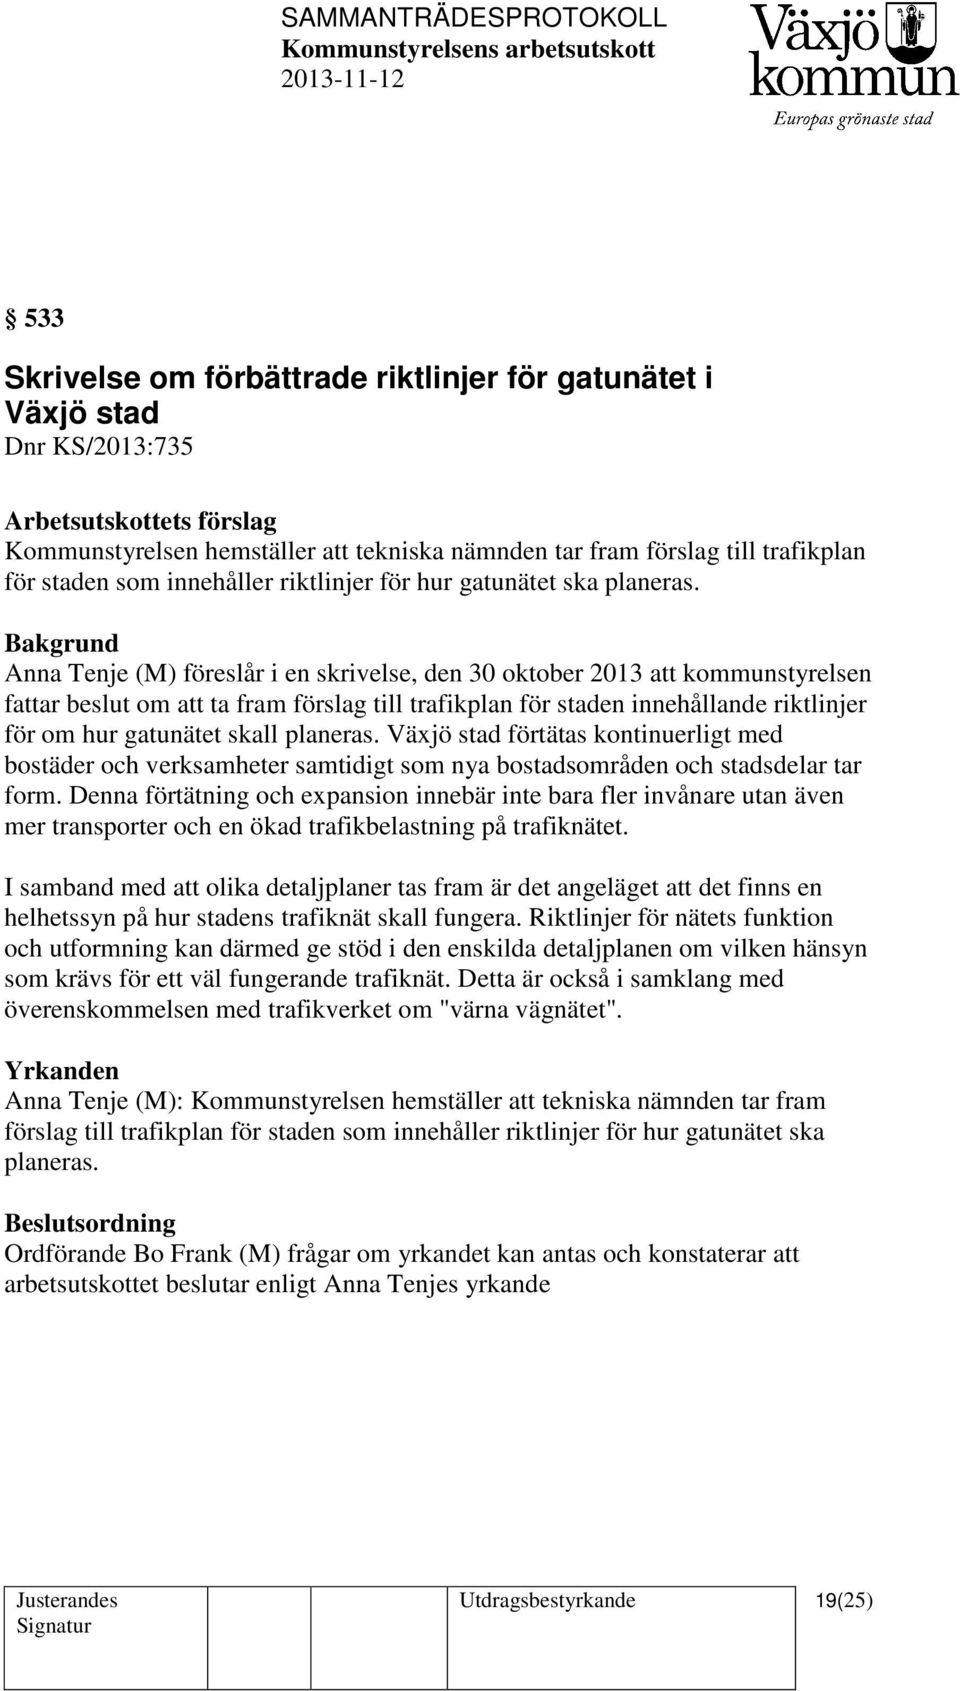 Anna Tenje (M) föreslår i en skrivelse, den 30 oktober 2013 att kommunstyrelsen fattar beslut om att ta fram förslag till trafikplan för staden innehållande riktlinjer för om hur gatunätet skall